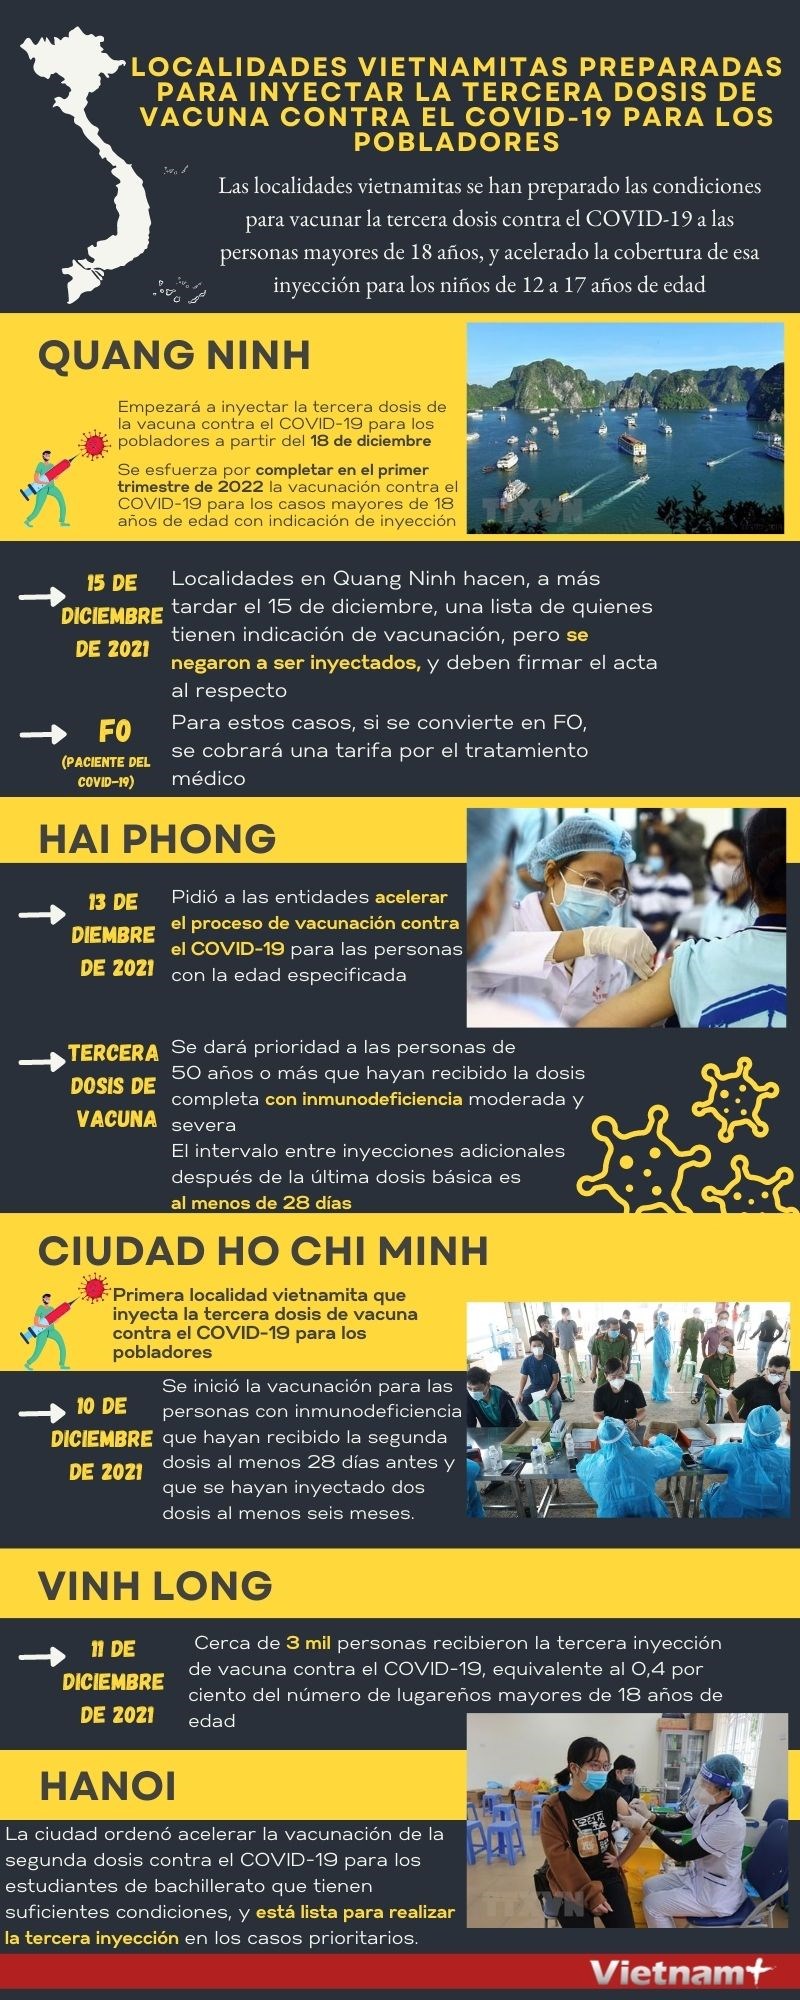 Localidades vietnamitas preparadas para inyectar la tercera dosis de vacuna contra el COVID-19 hinh anh 1